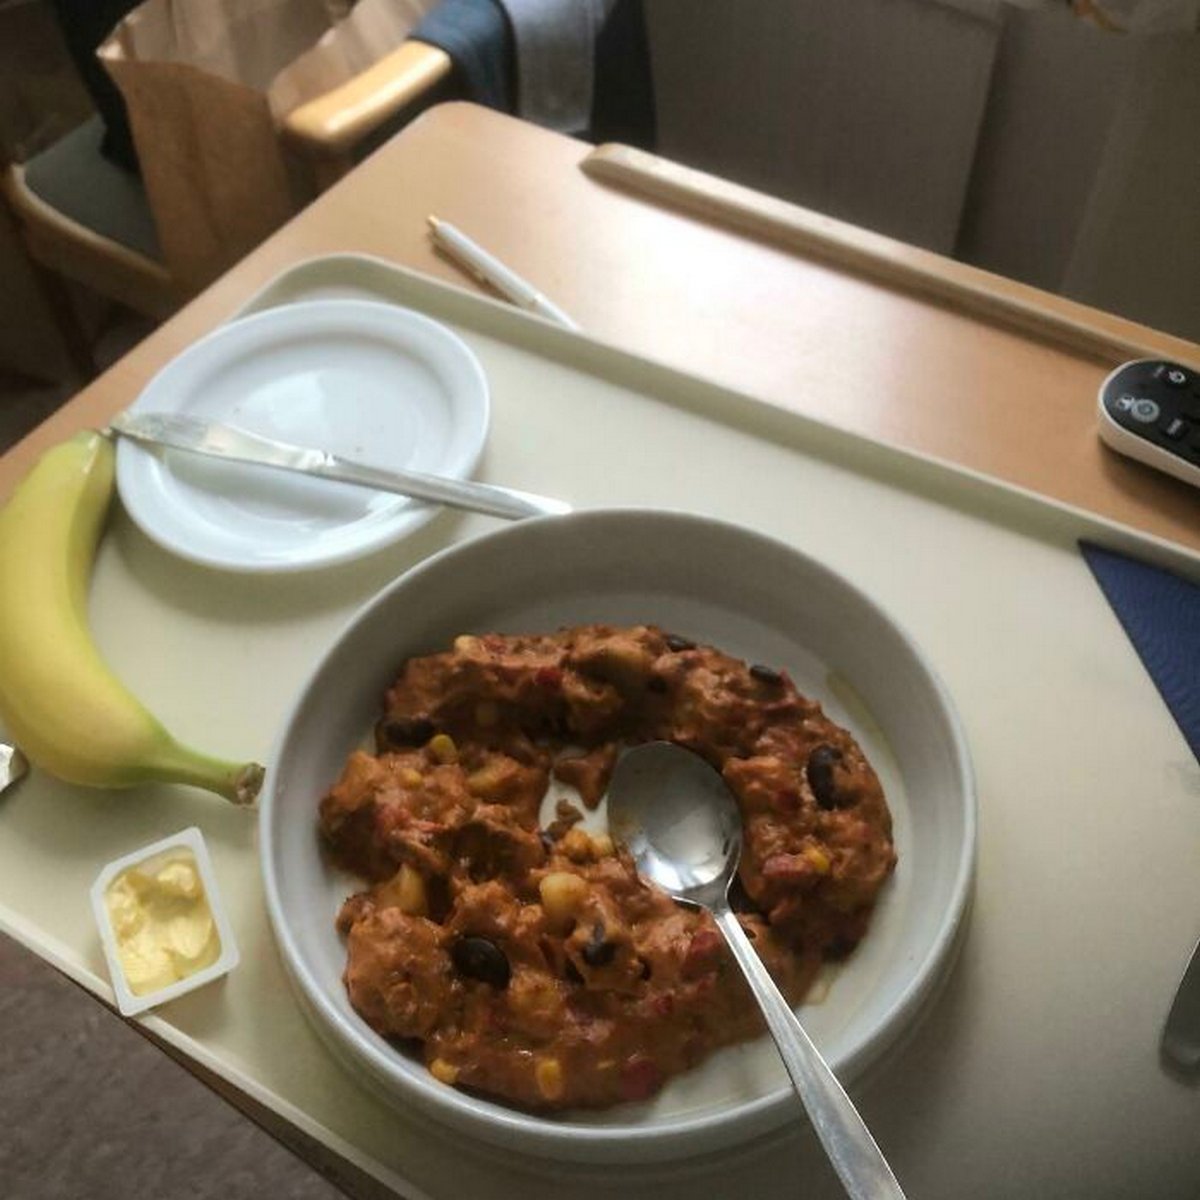 Ces gens ont reçu de la nourriture d’hôpital si dégoûtante qu’ils ont décidé de partager des photos en ligne